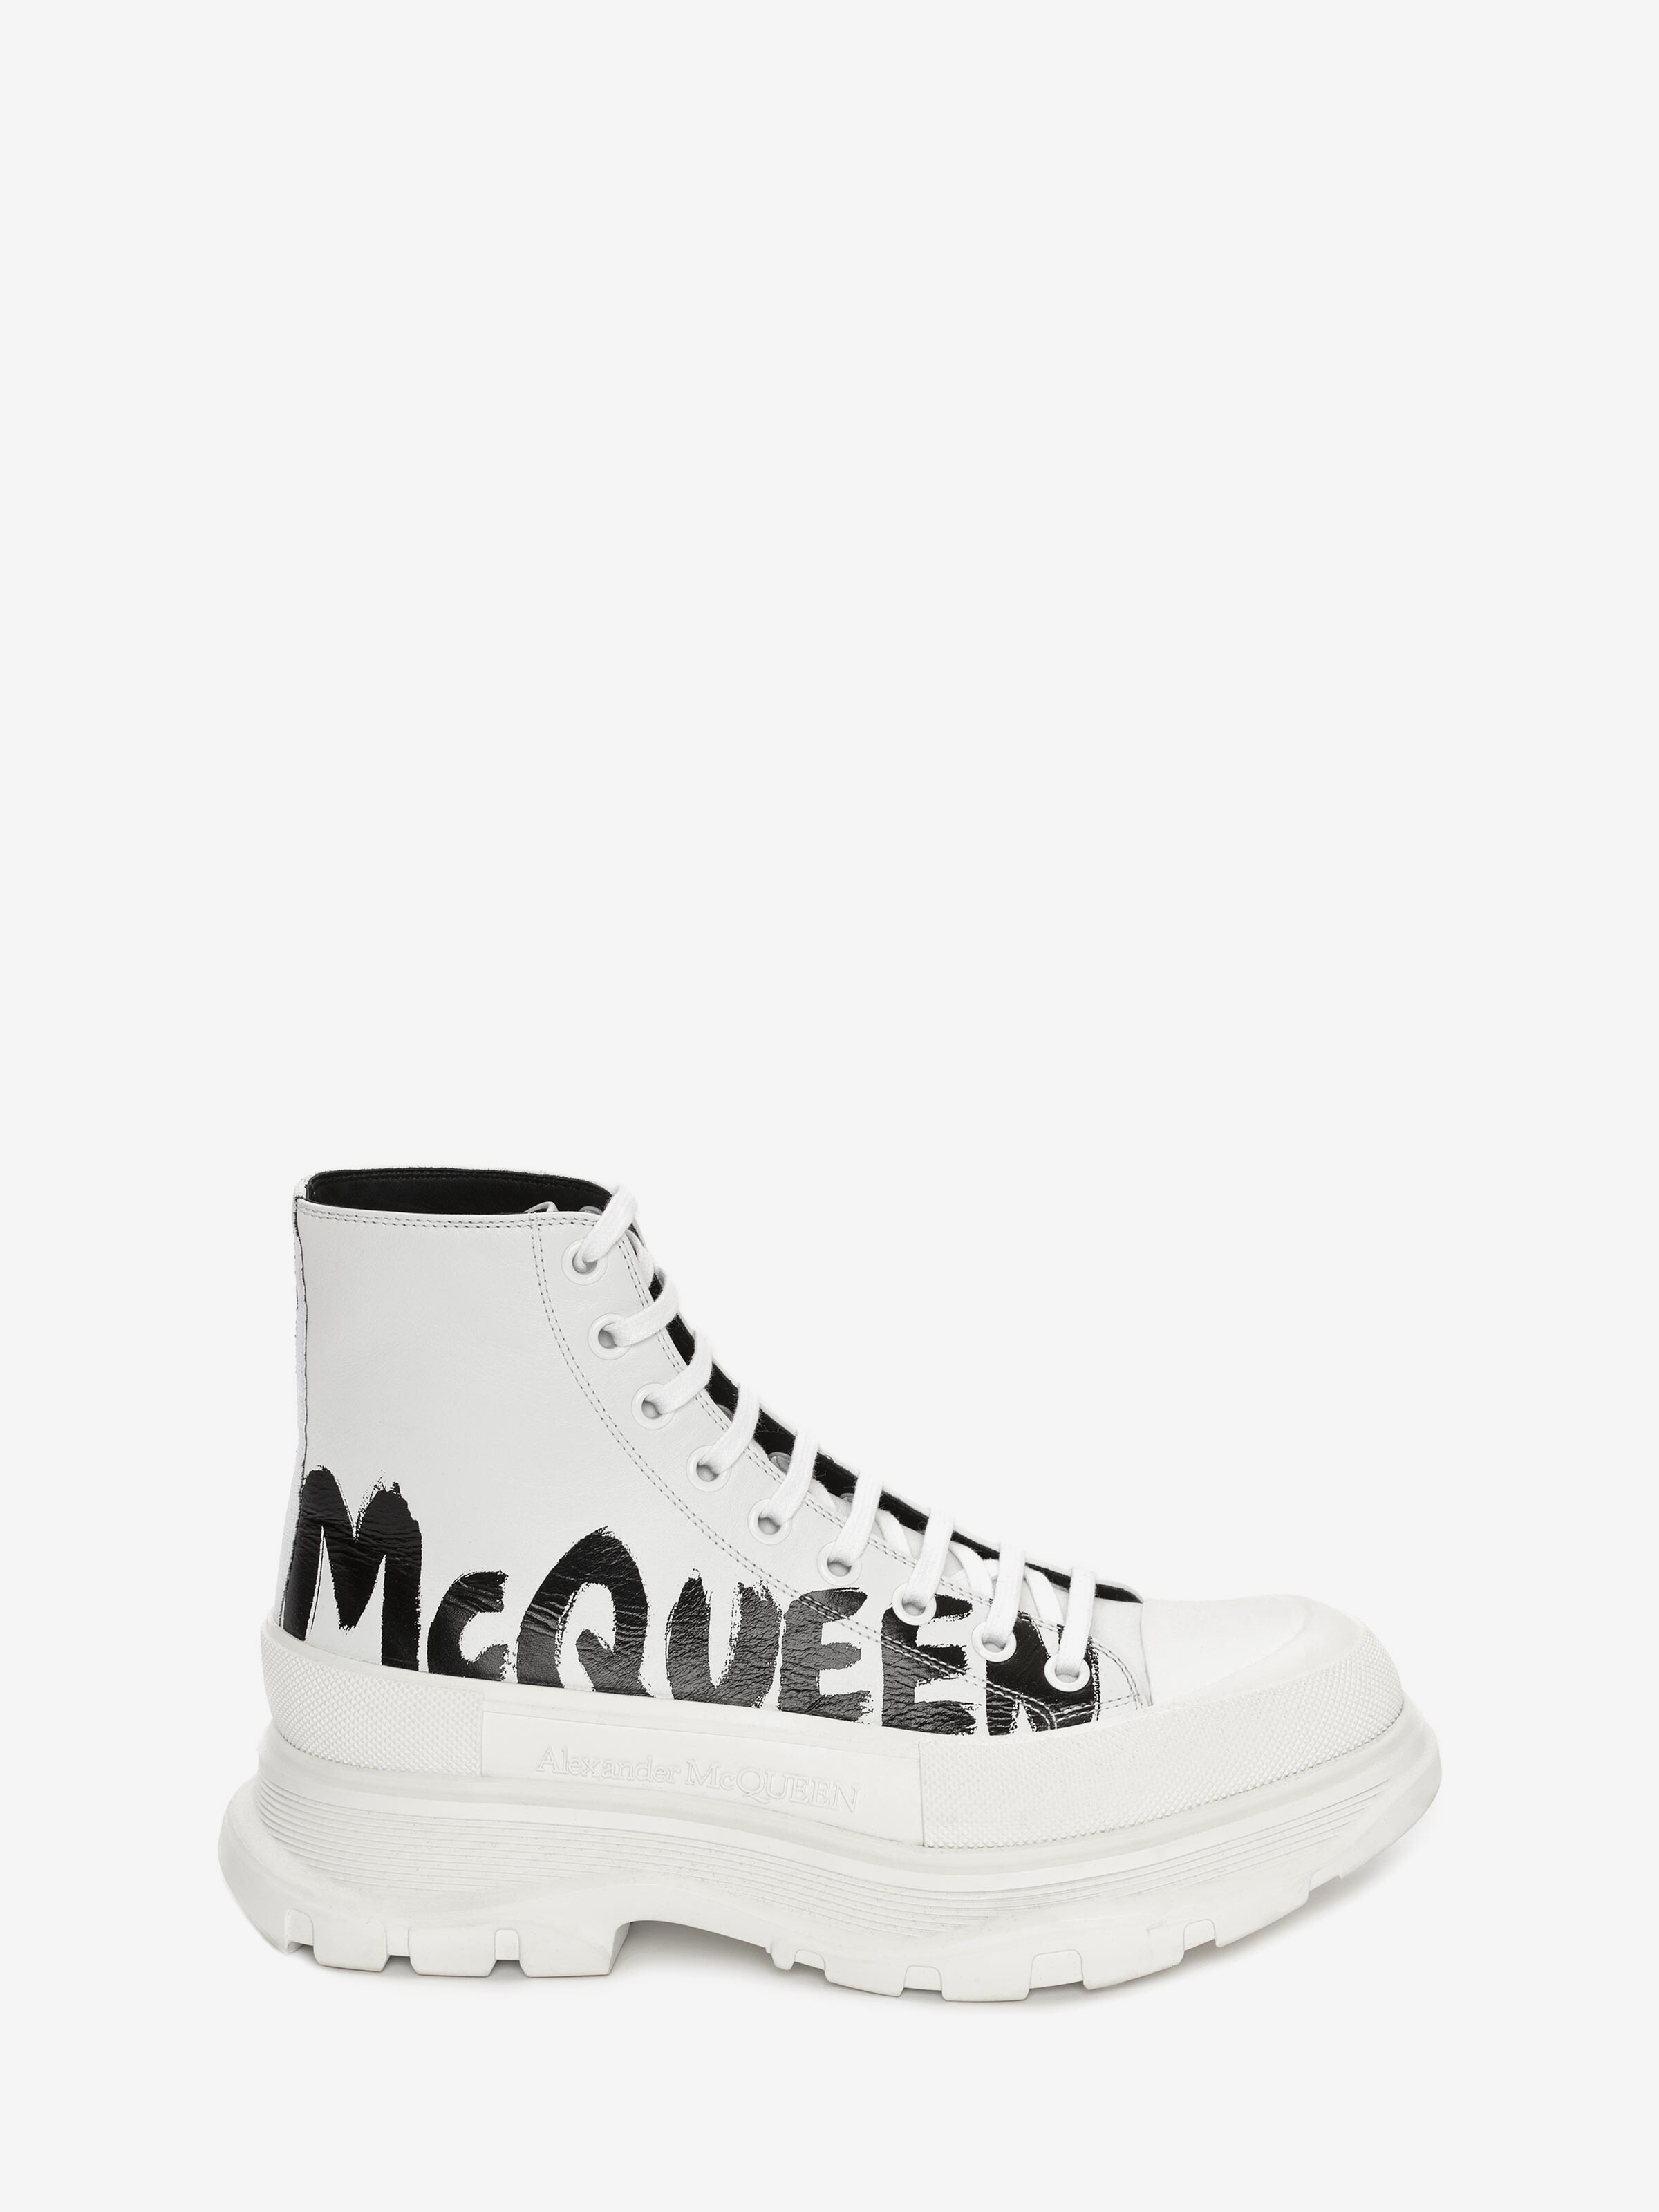 McQueen Graffiti Tread Slick Boot